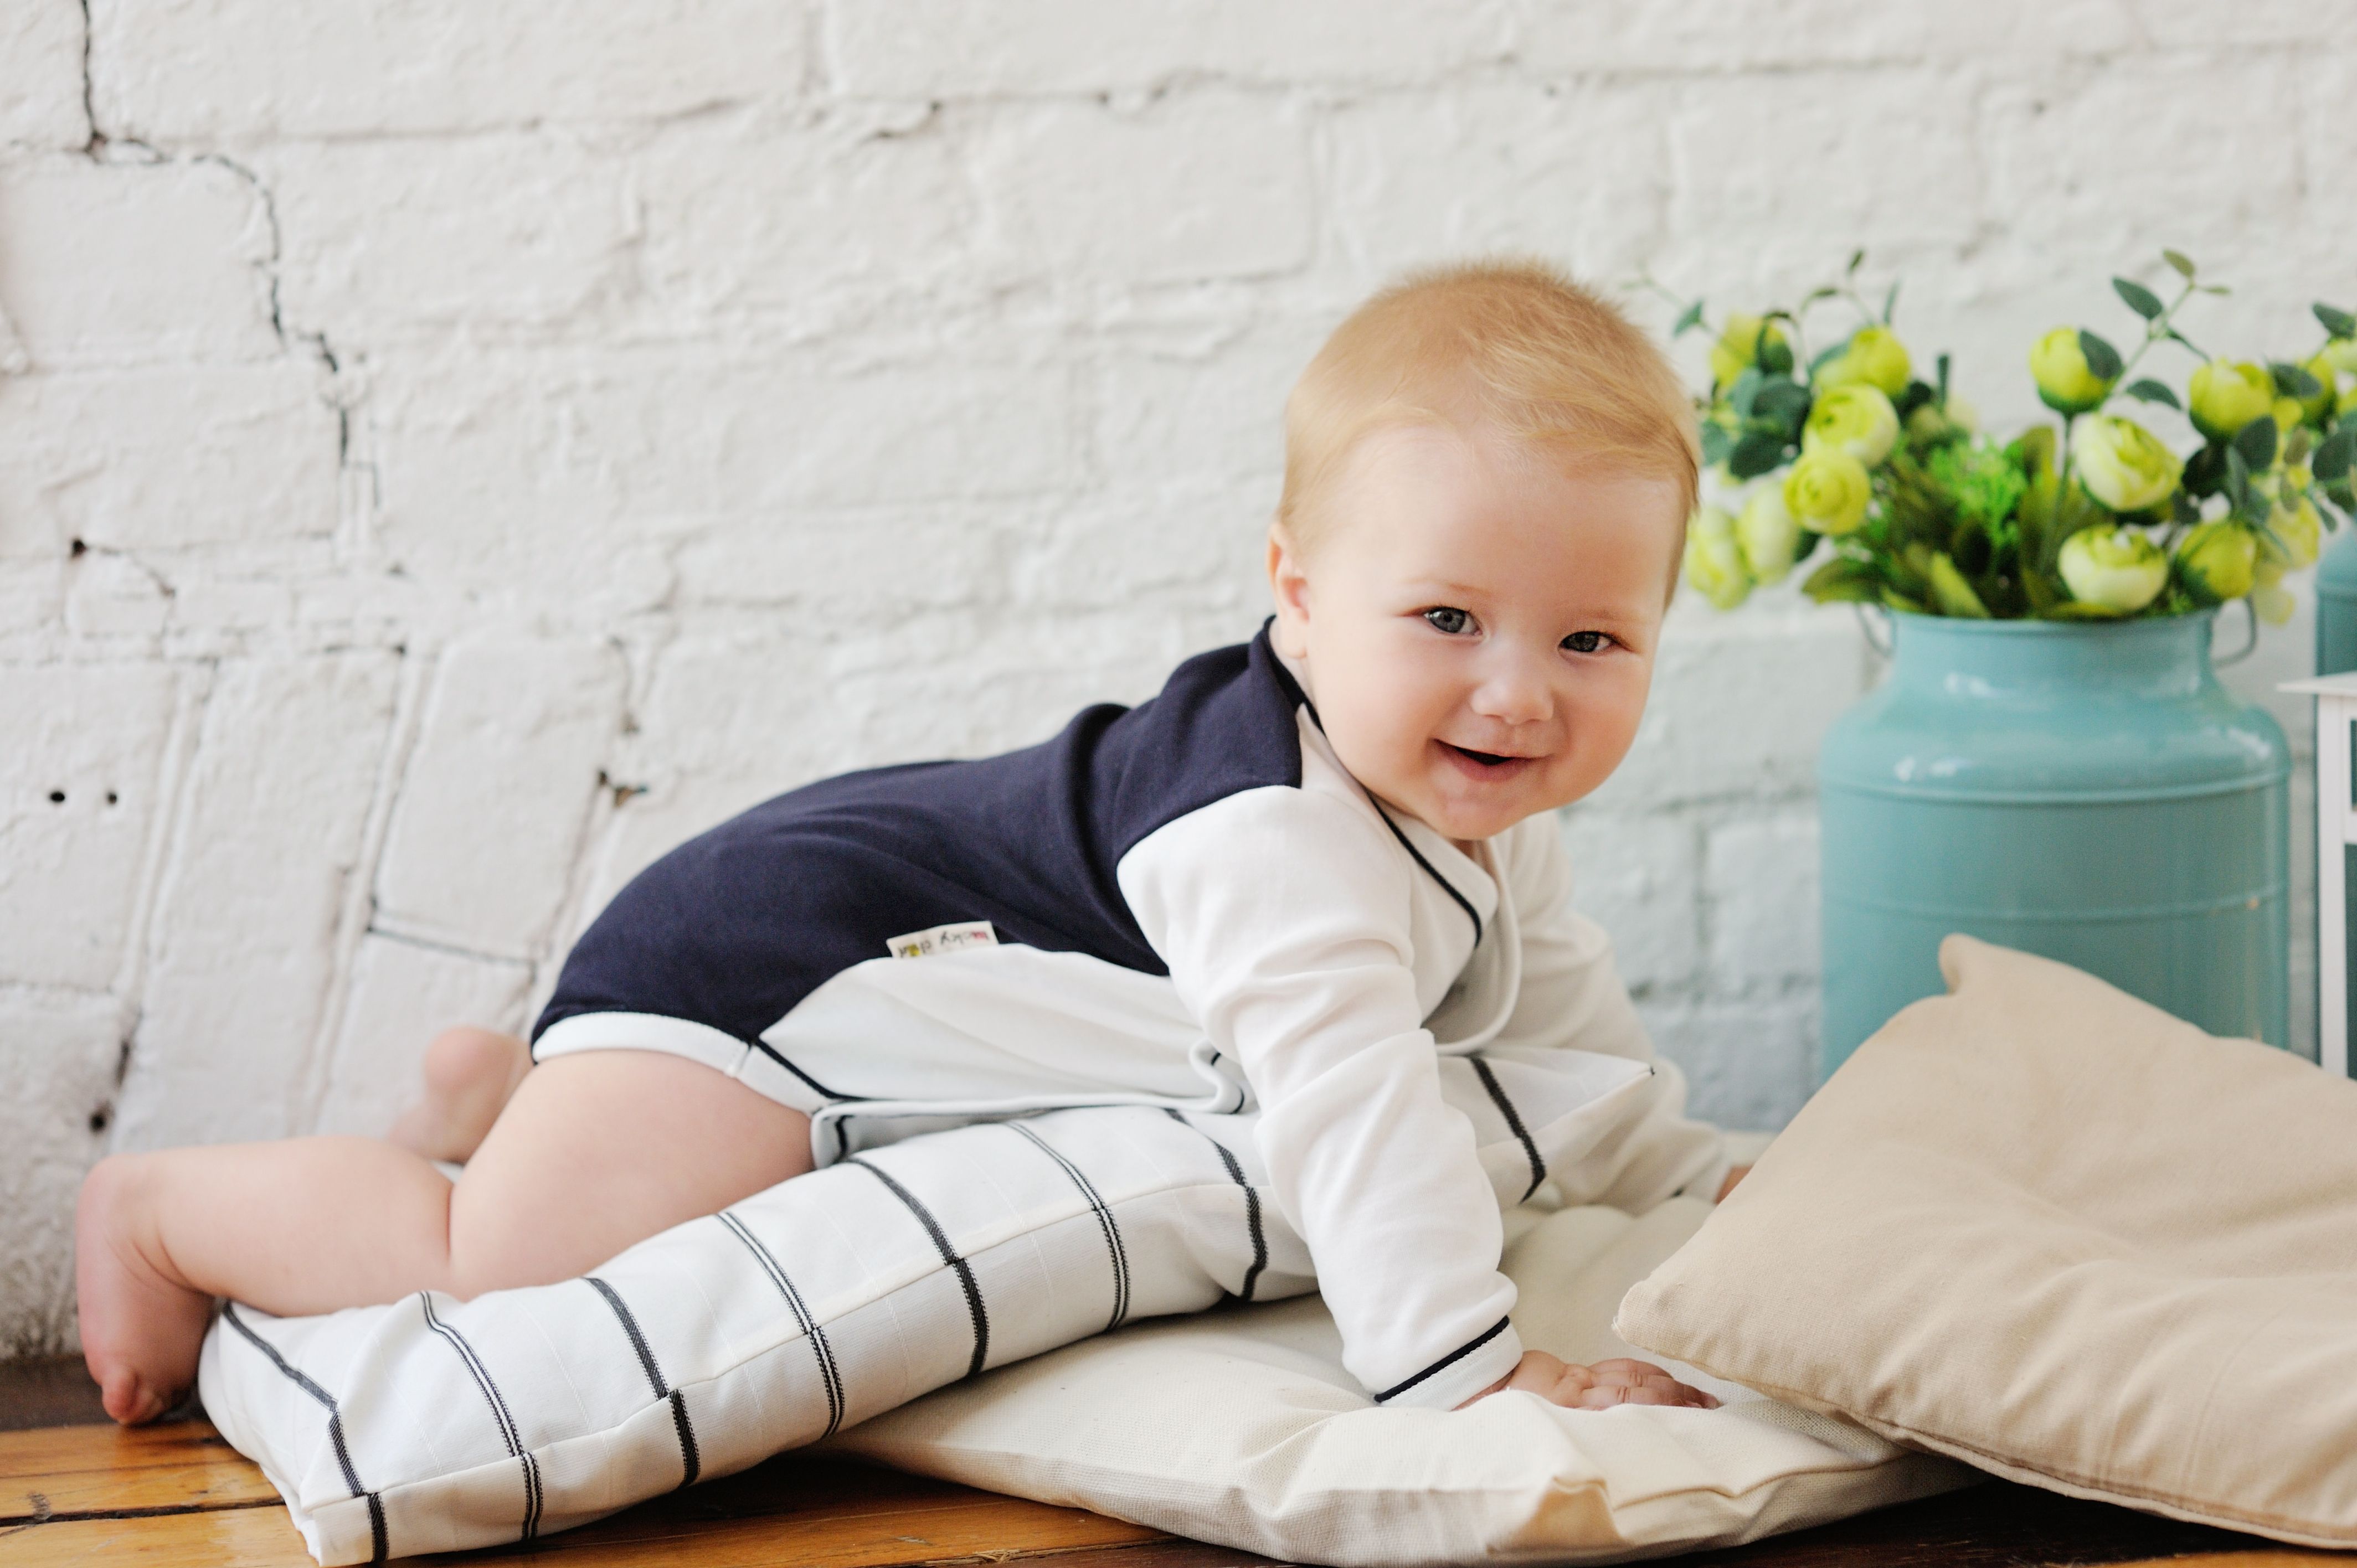 Одежда для малышей с рождения и до 7 лет lucky child – яркий дизайн, стиль, мода, качество и недорогая цена